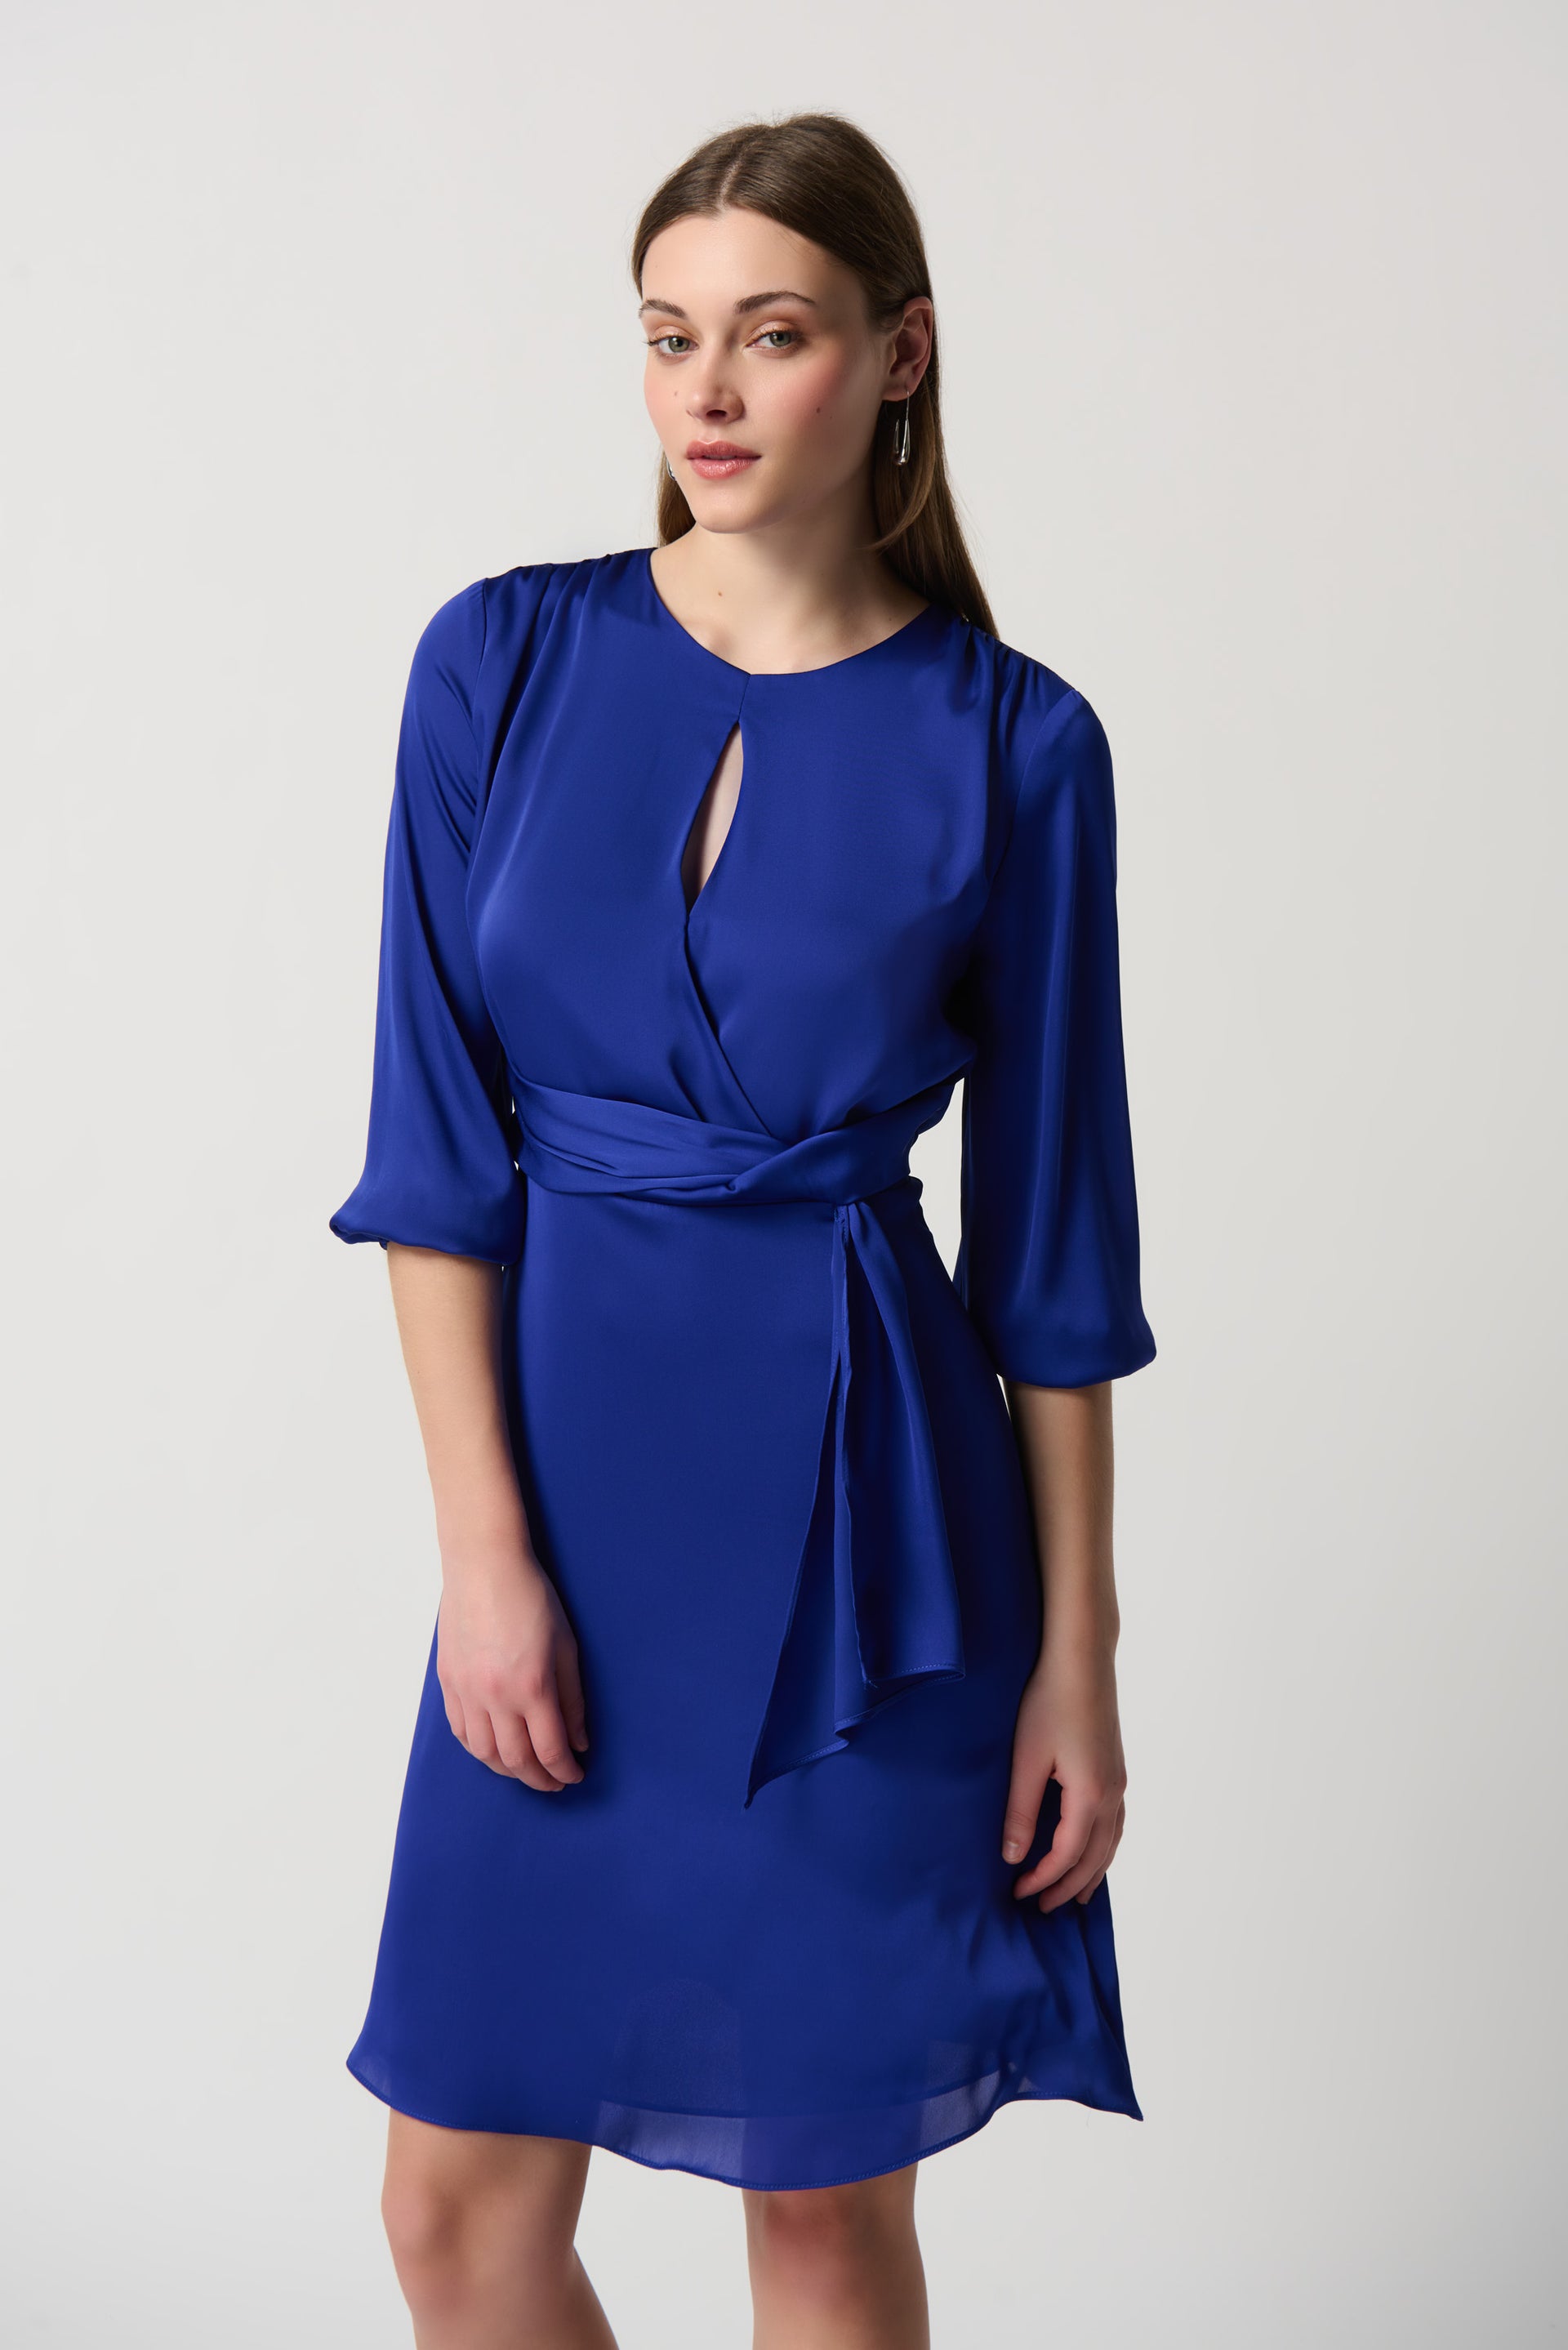 Vestido SATIN azul eléctrico - Comprar en Shibinda